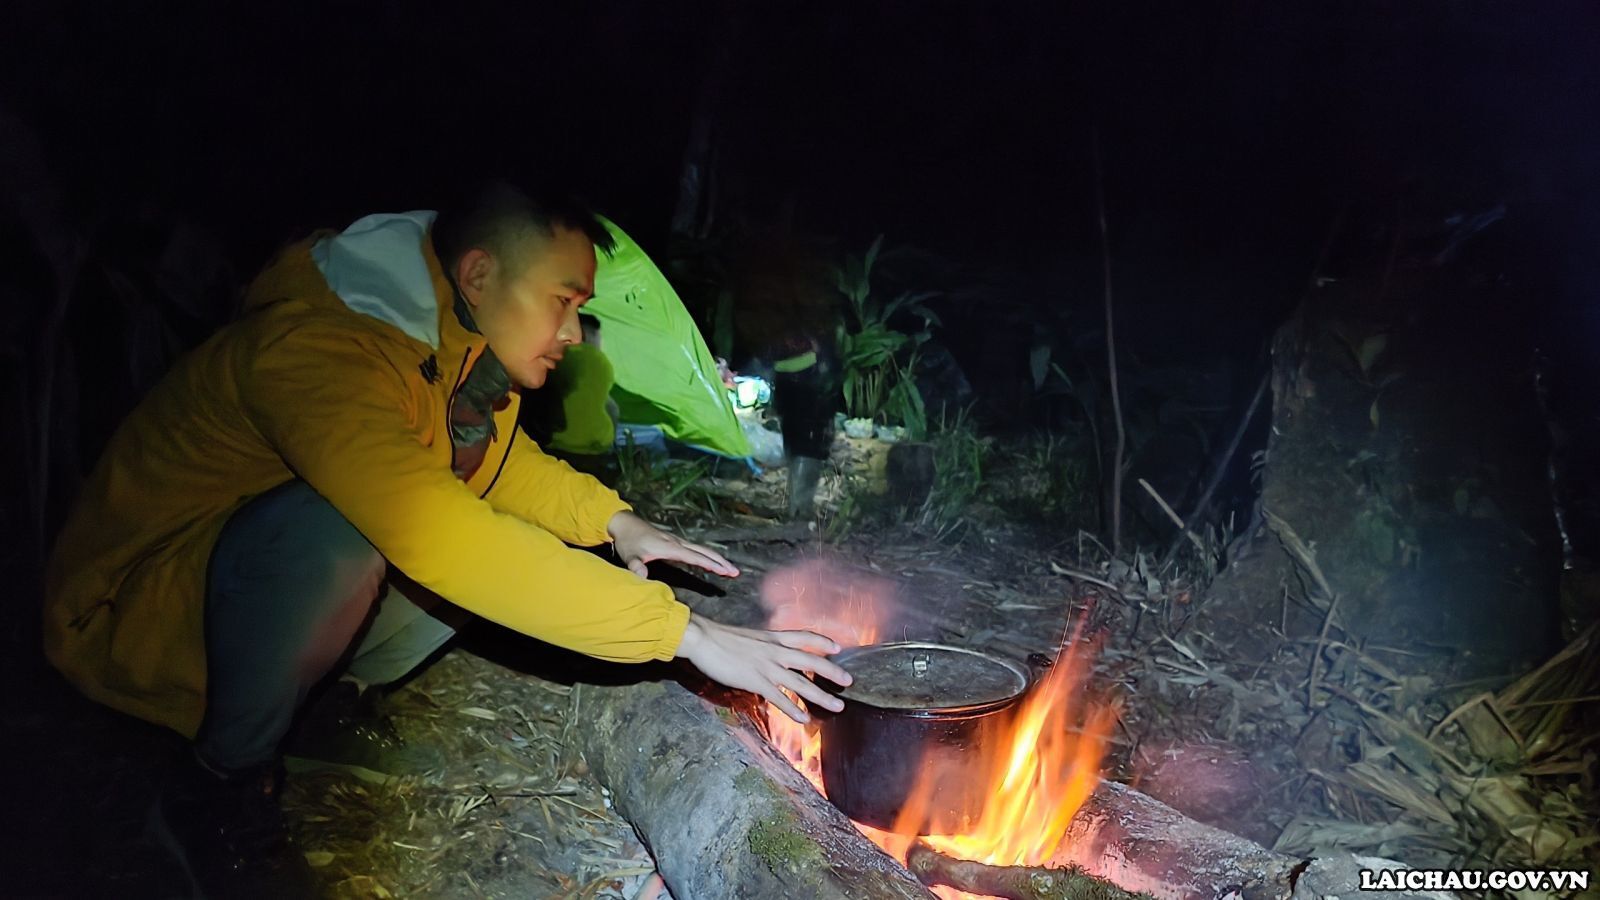 Cùng dựng lán và nấu bữa tối dưới rừng già, bên ánh lửa bập bùng.